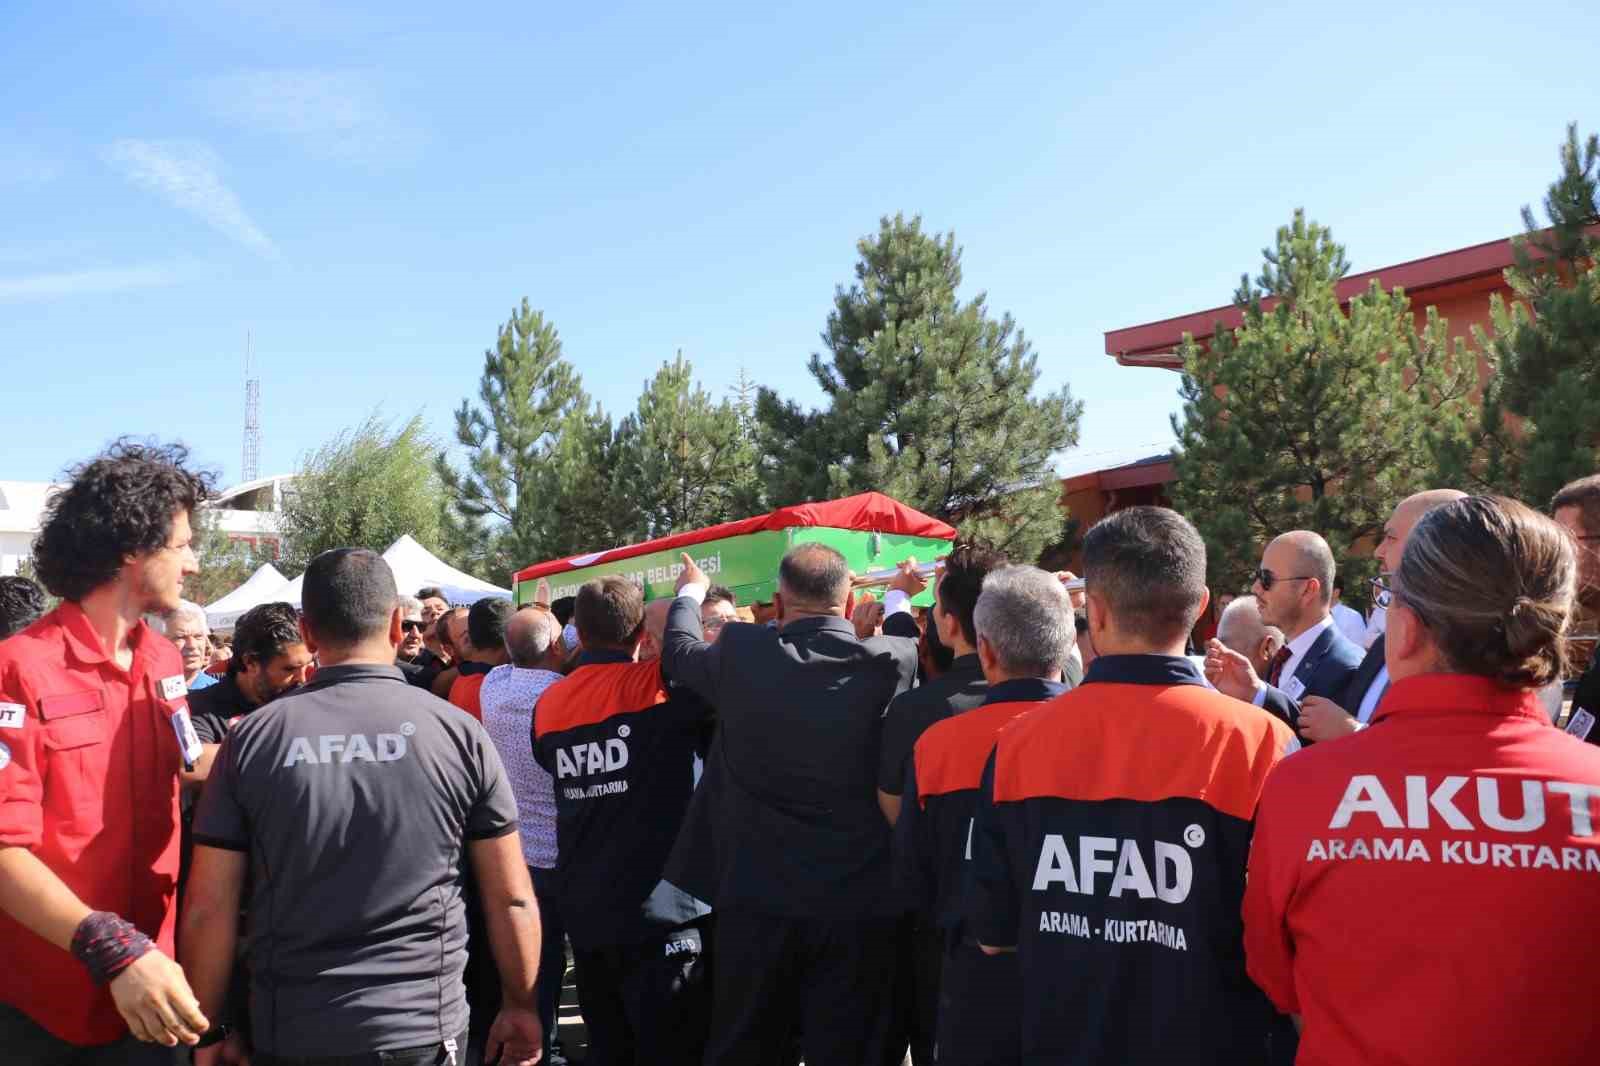 Memiş: “AFAD’ın arama kurtarma ekipleri kendini ispat etmiş ve dünya çapında olaylara müdahale etmiştir”